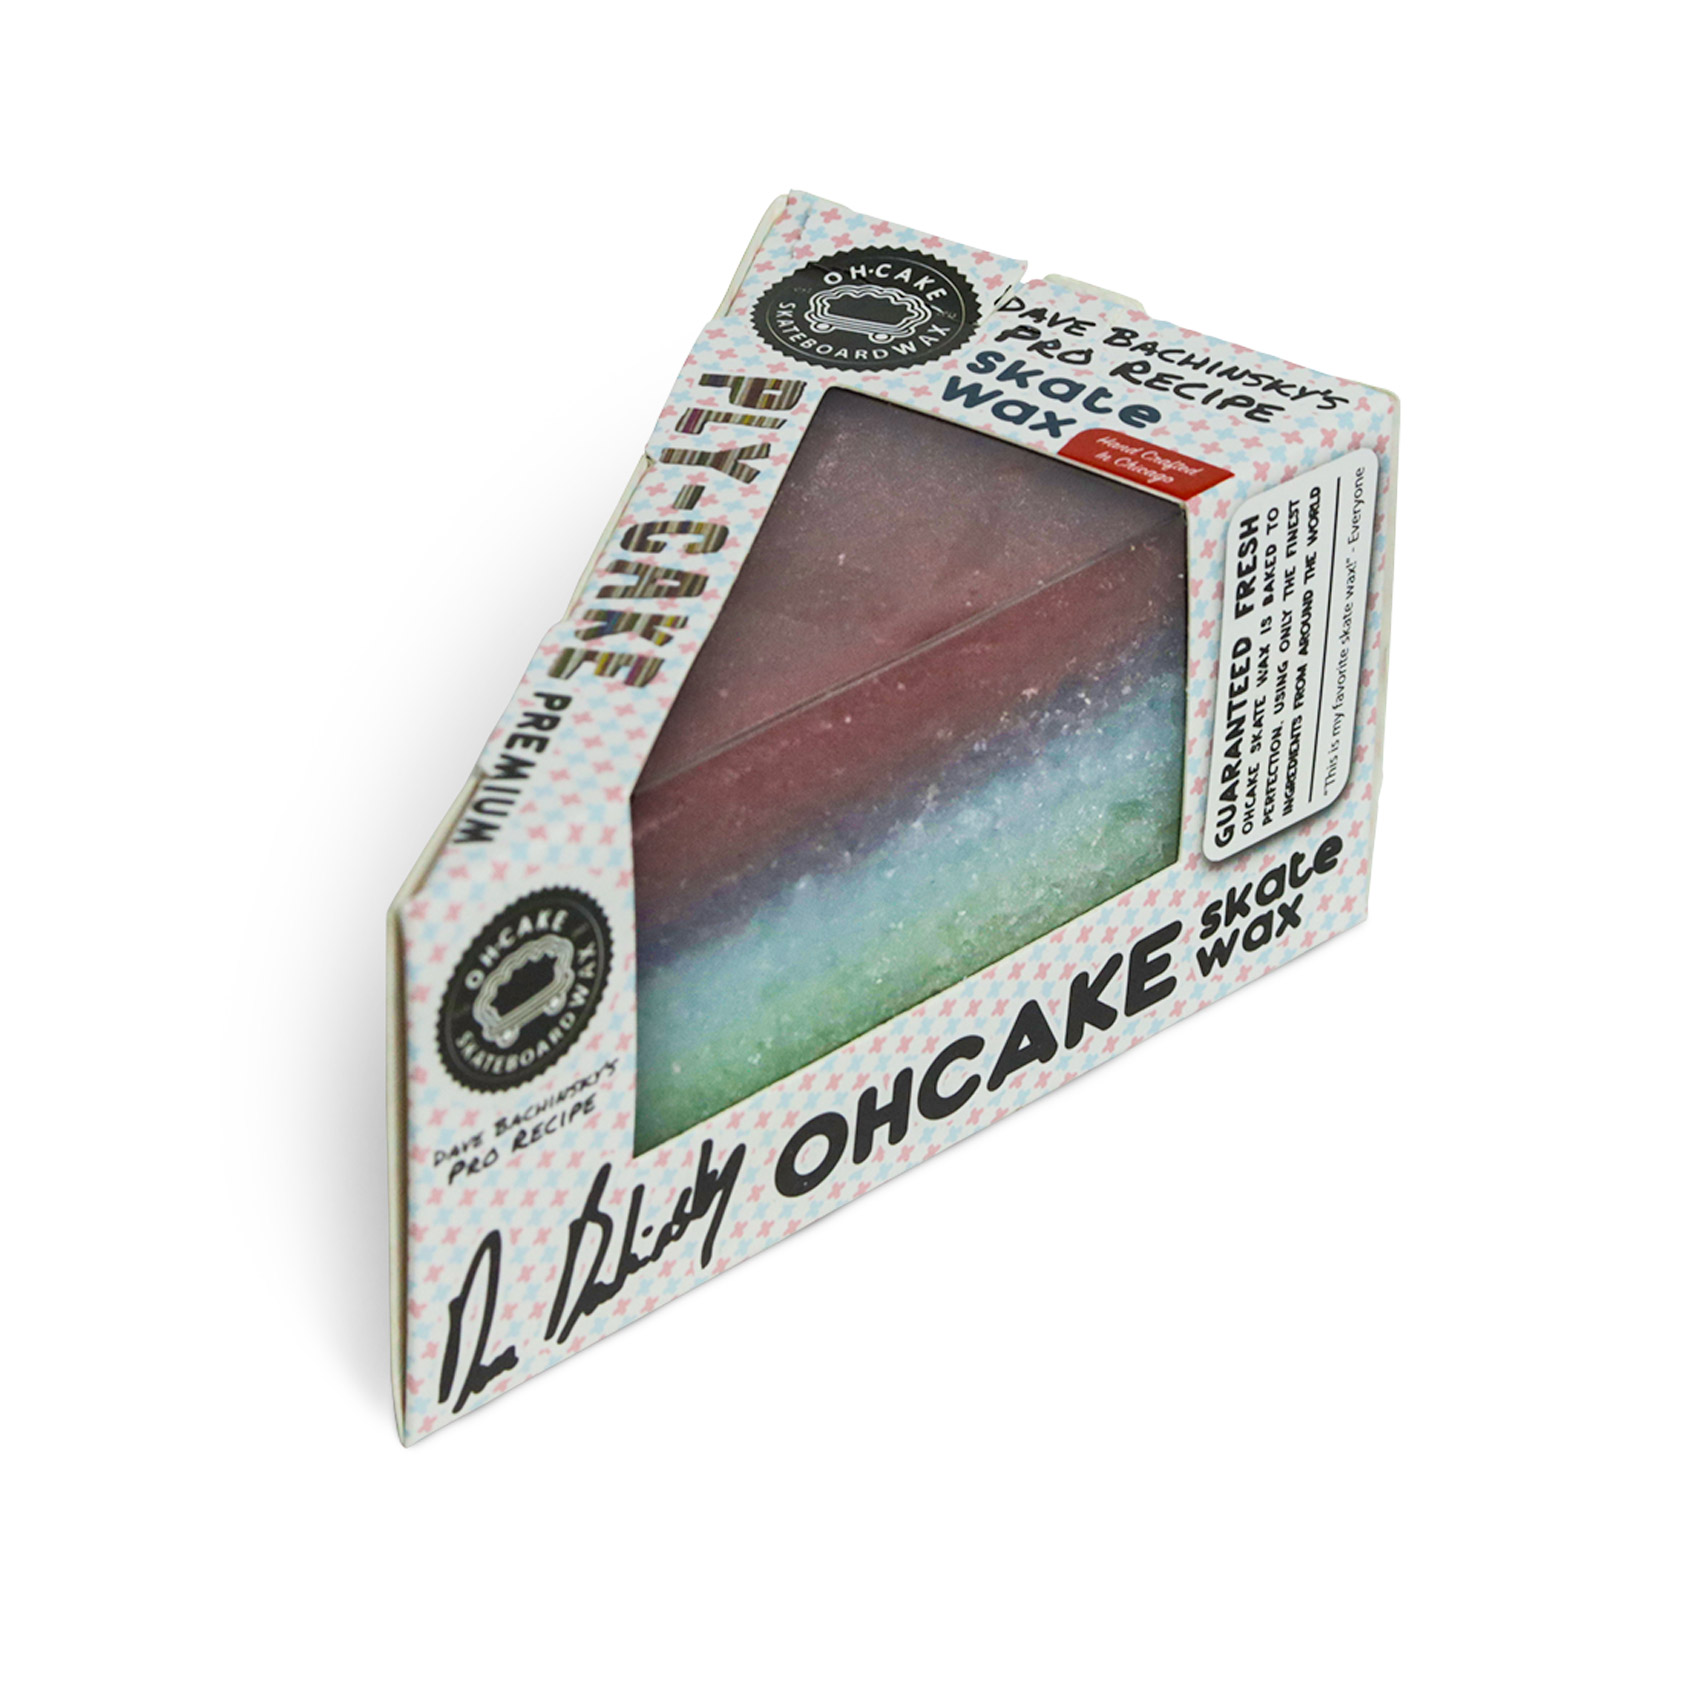 OhCake Skatewachs Bachinsky's Ply Cake